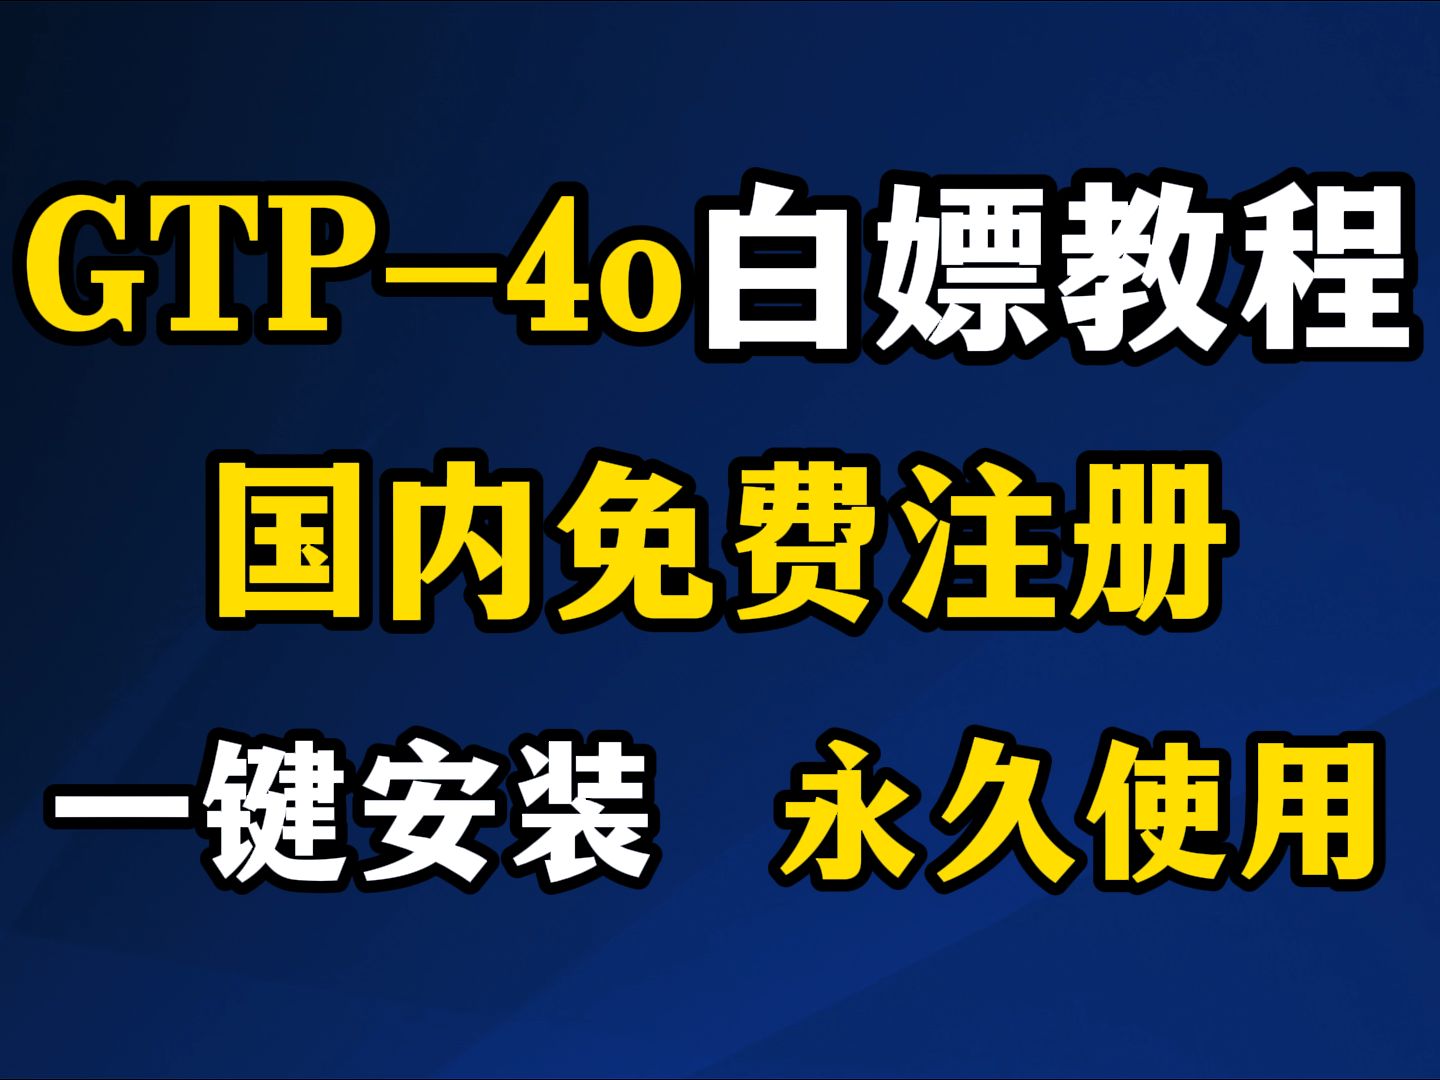 【国内免费GPT-4o】GPT-4o最新使用注册教程